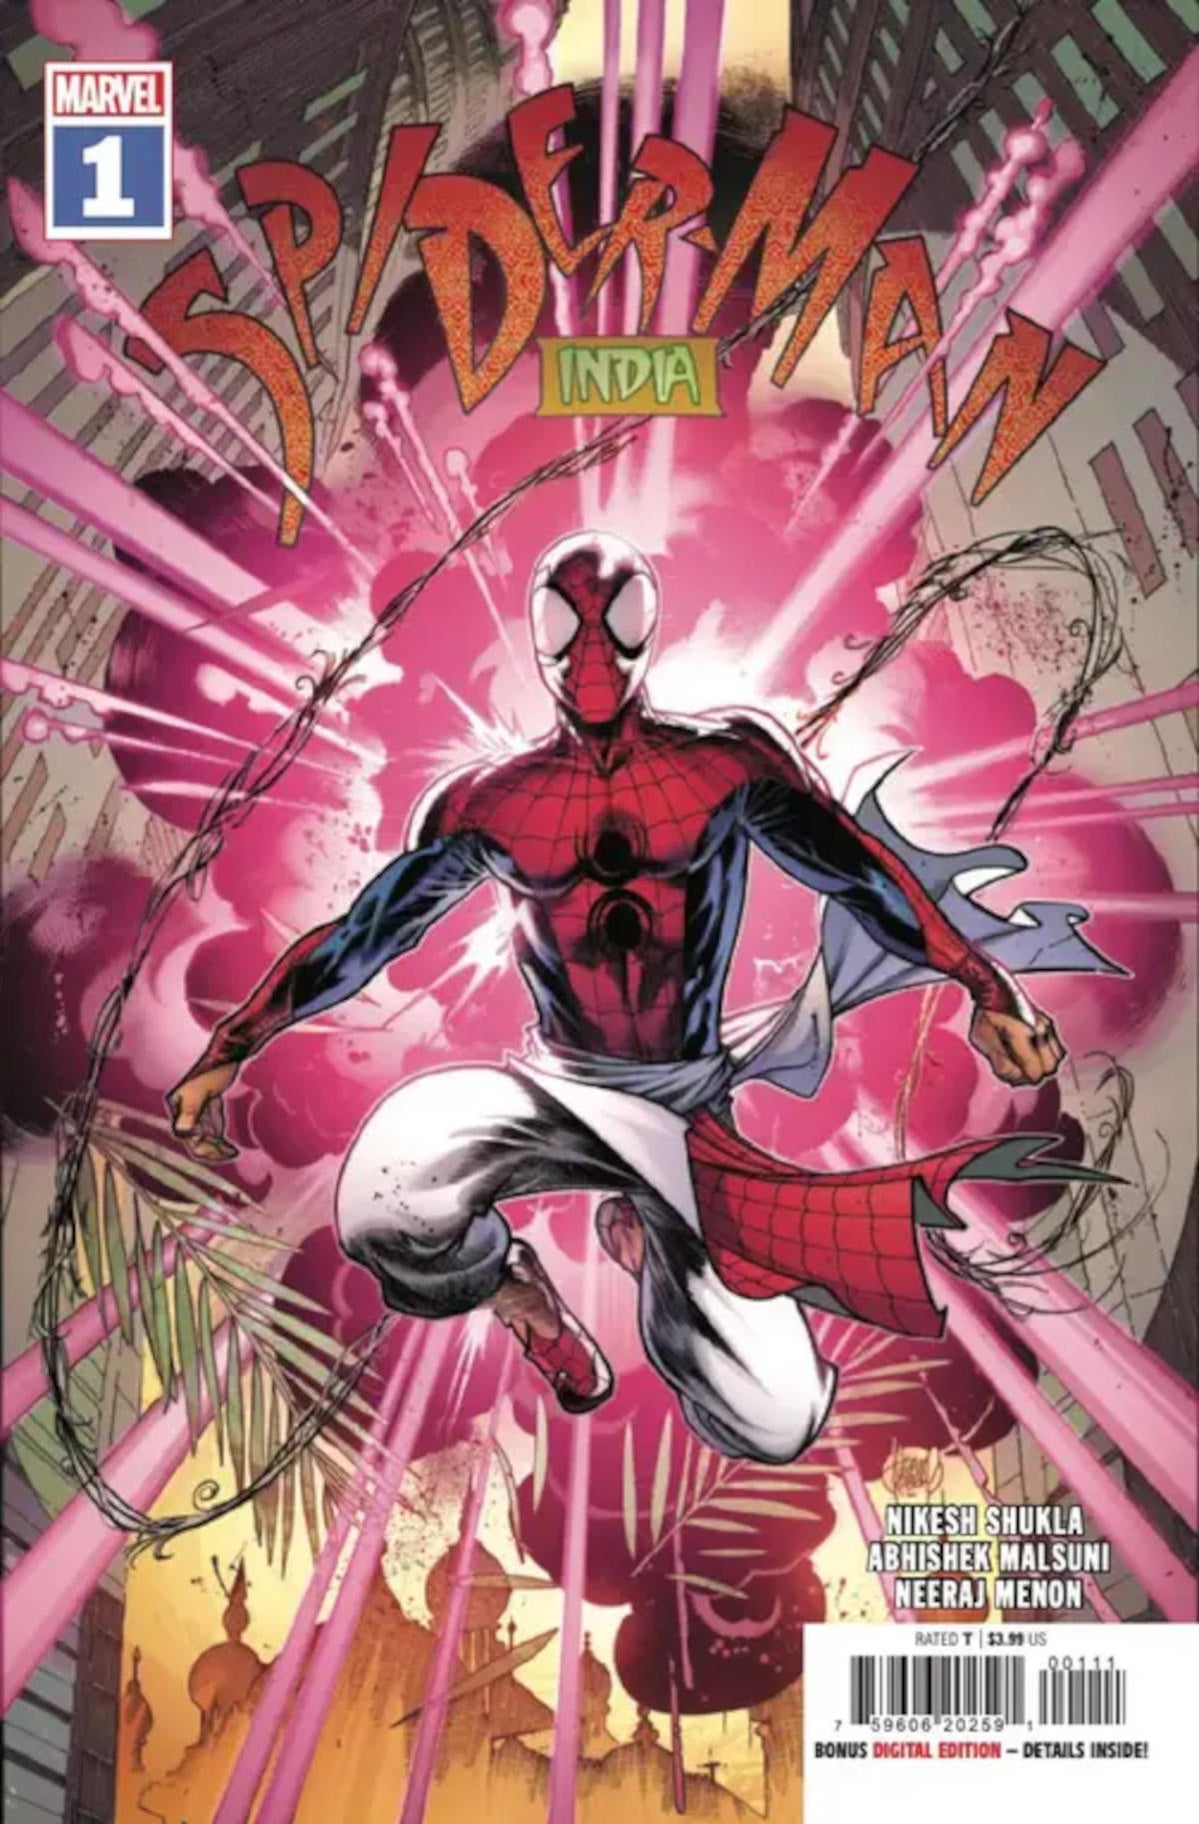 spider-man-india-comic-relanzamiento-después-de-spider-verse-2.jpg